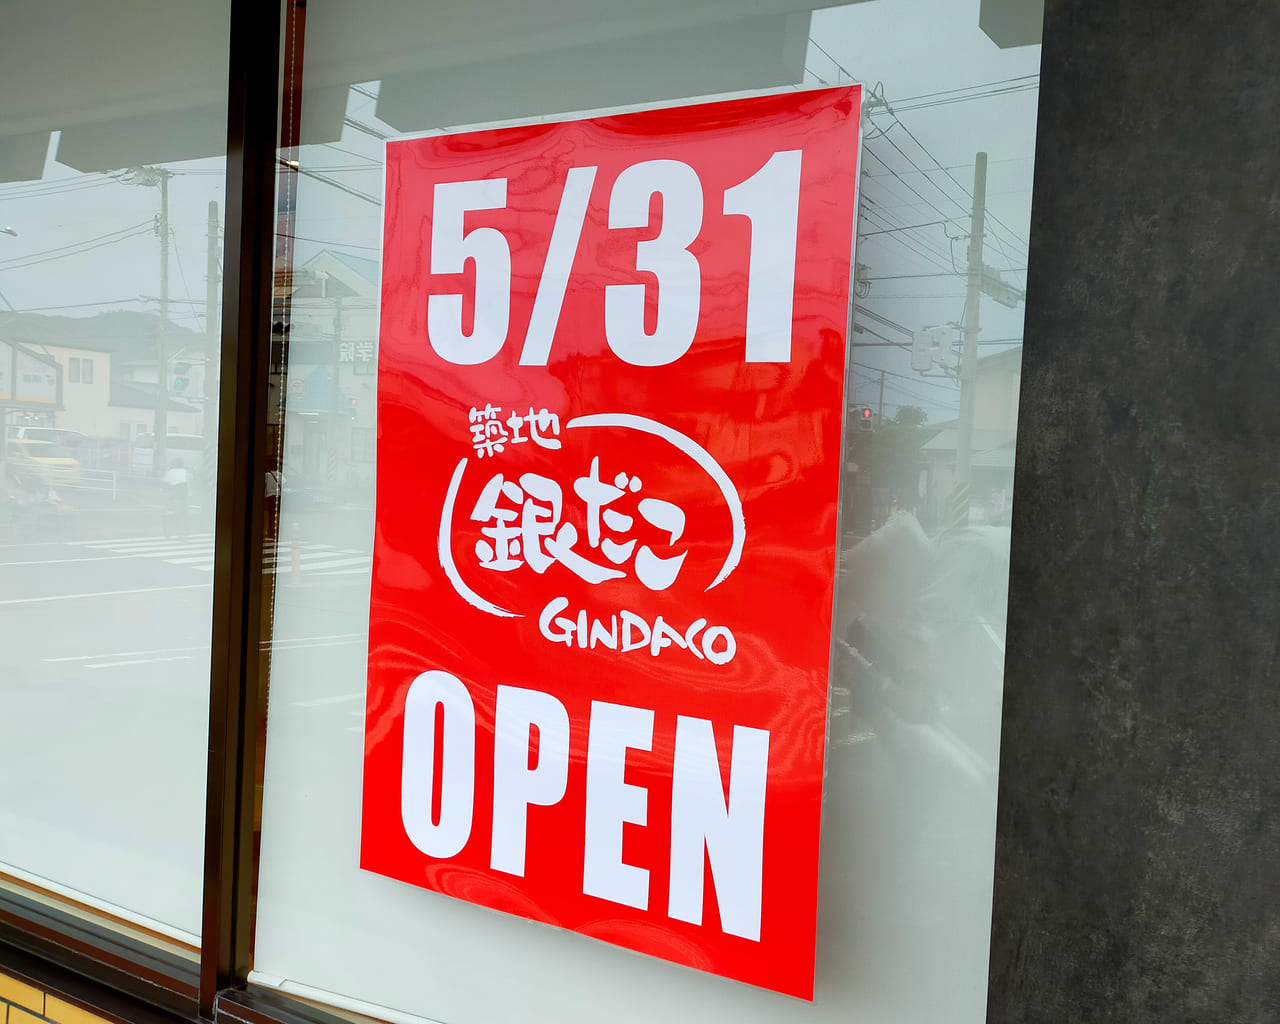 平塚市 築地銀だこ 平塚河内ドライブイン店 が5月31日 月 にオープンします 号外net 平塚市